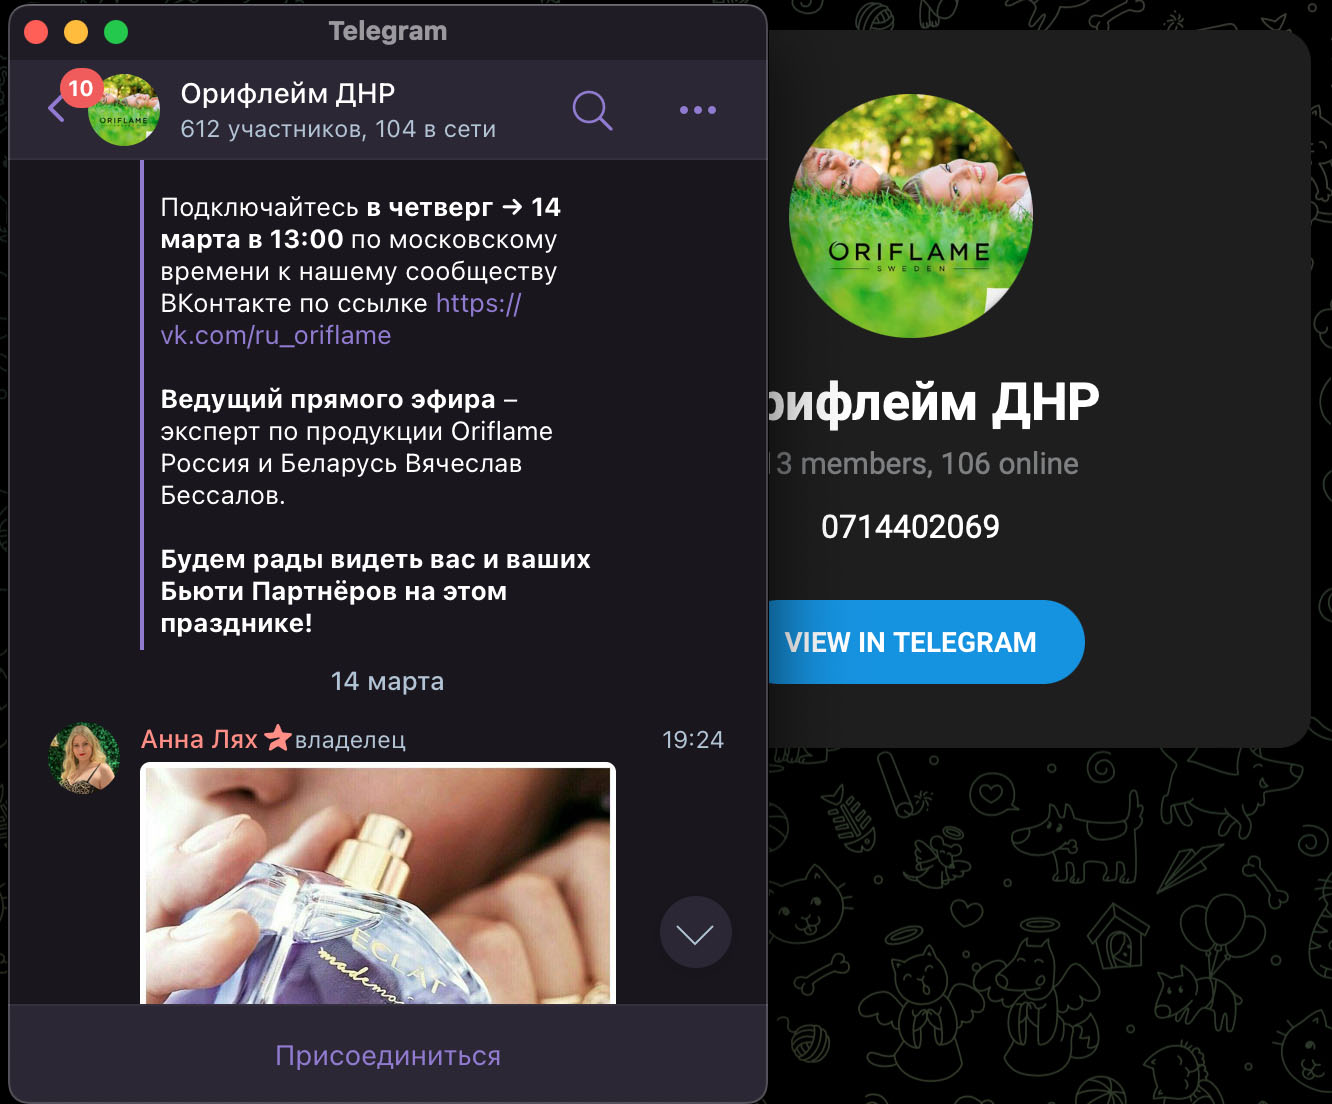 Скриншоты украинских и европейских СМИ с сообщениями о работе бренда Oriflame в РФ и ДНР